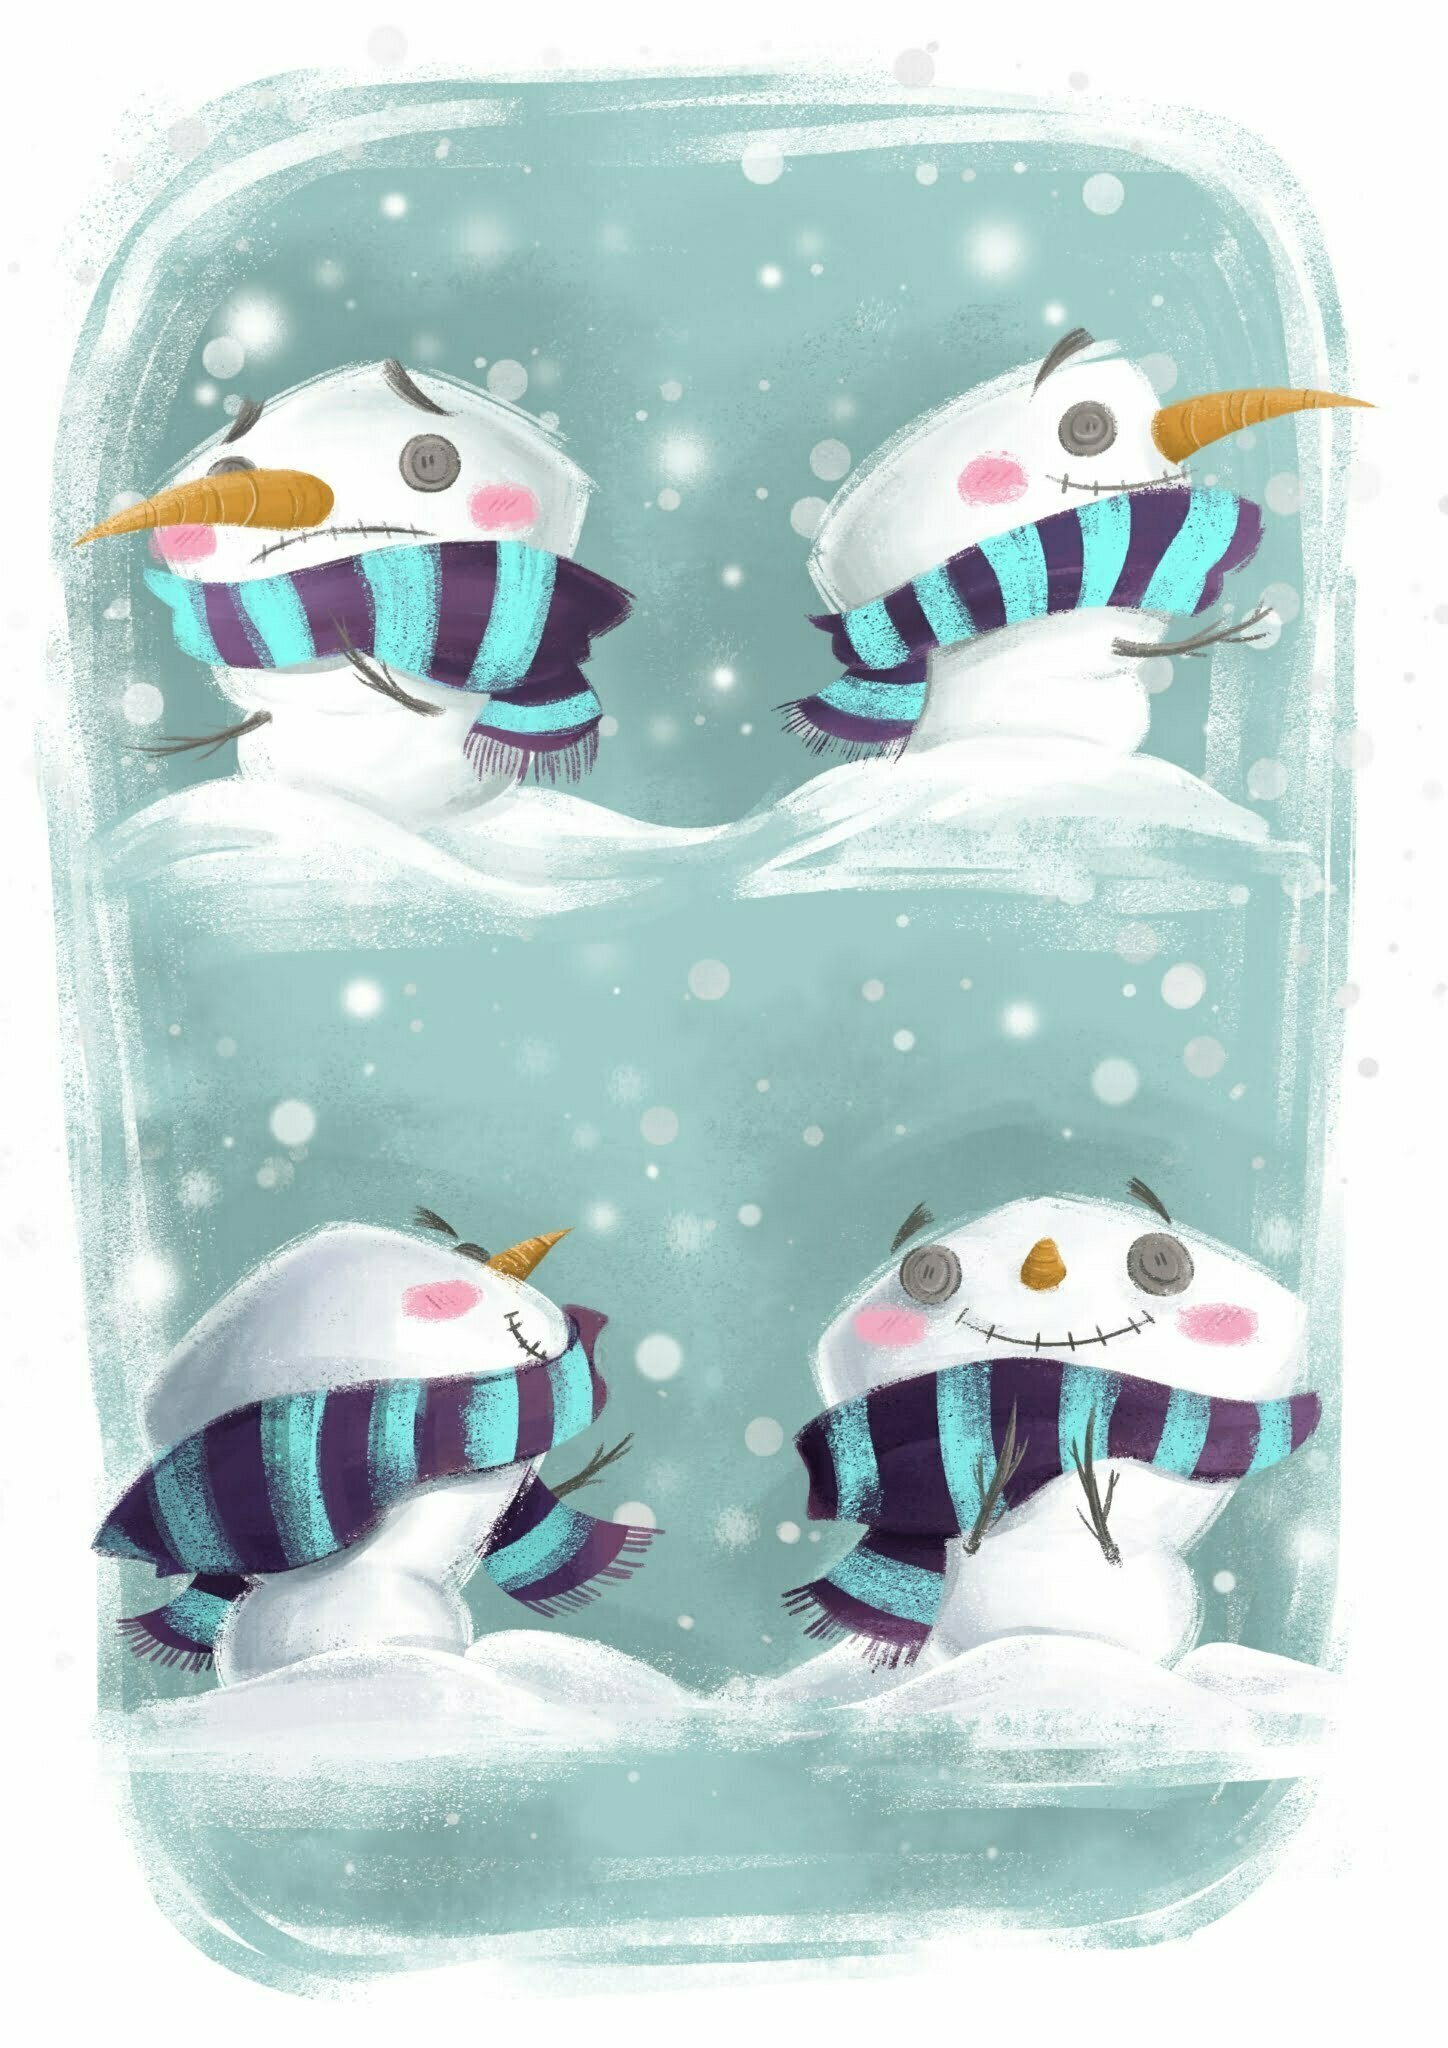 snowfall characters